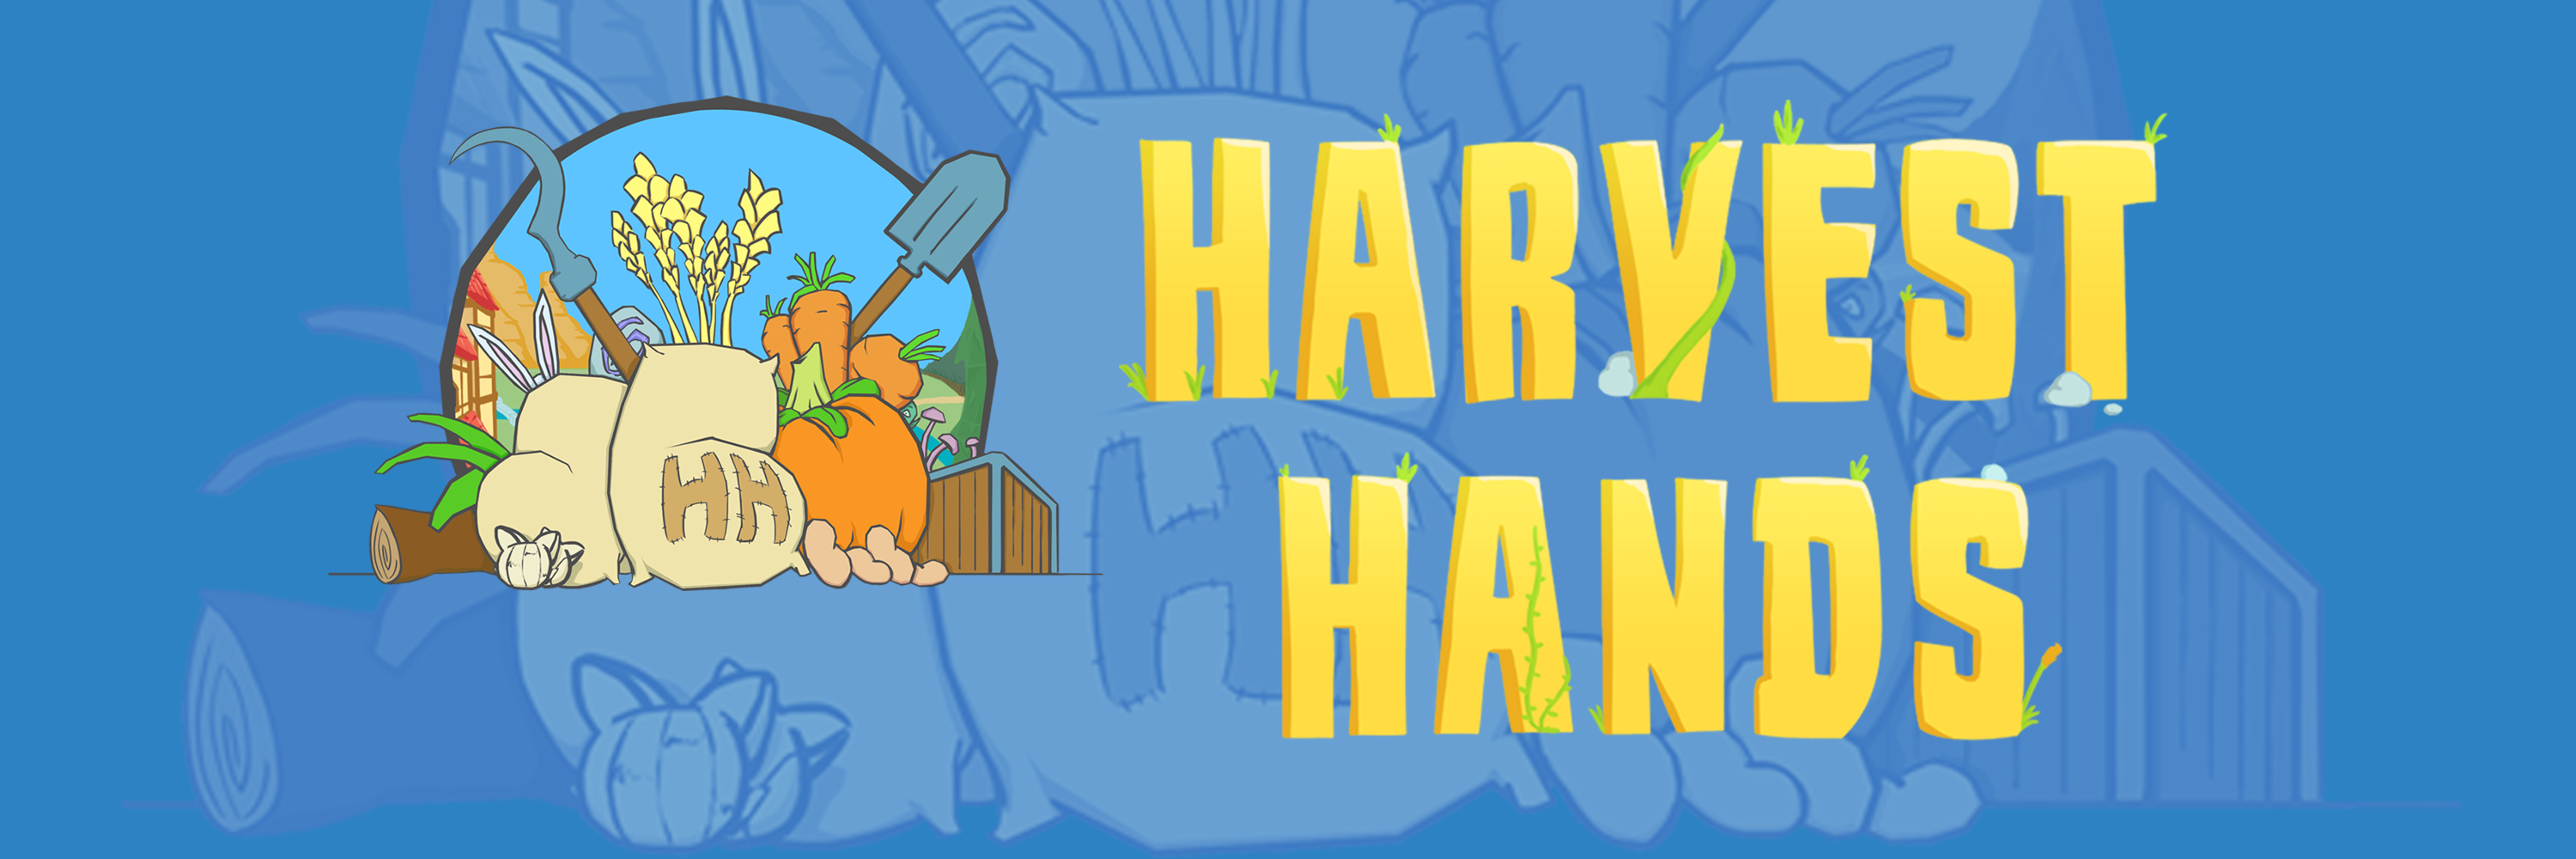 Harvest Hands   Twitter Cover Ph